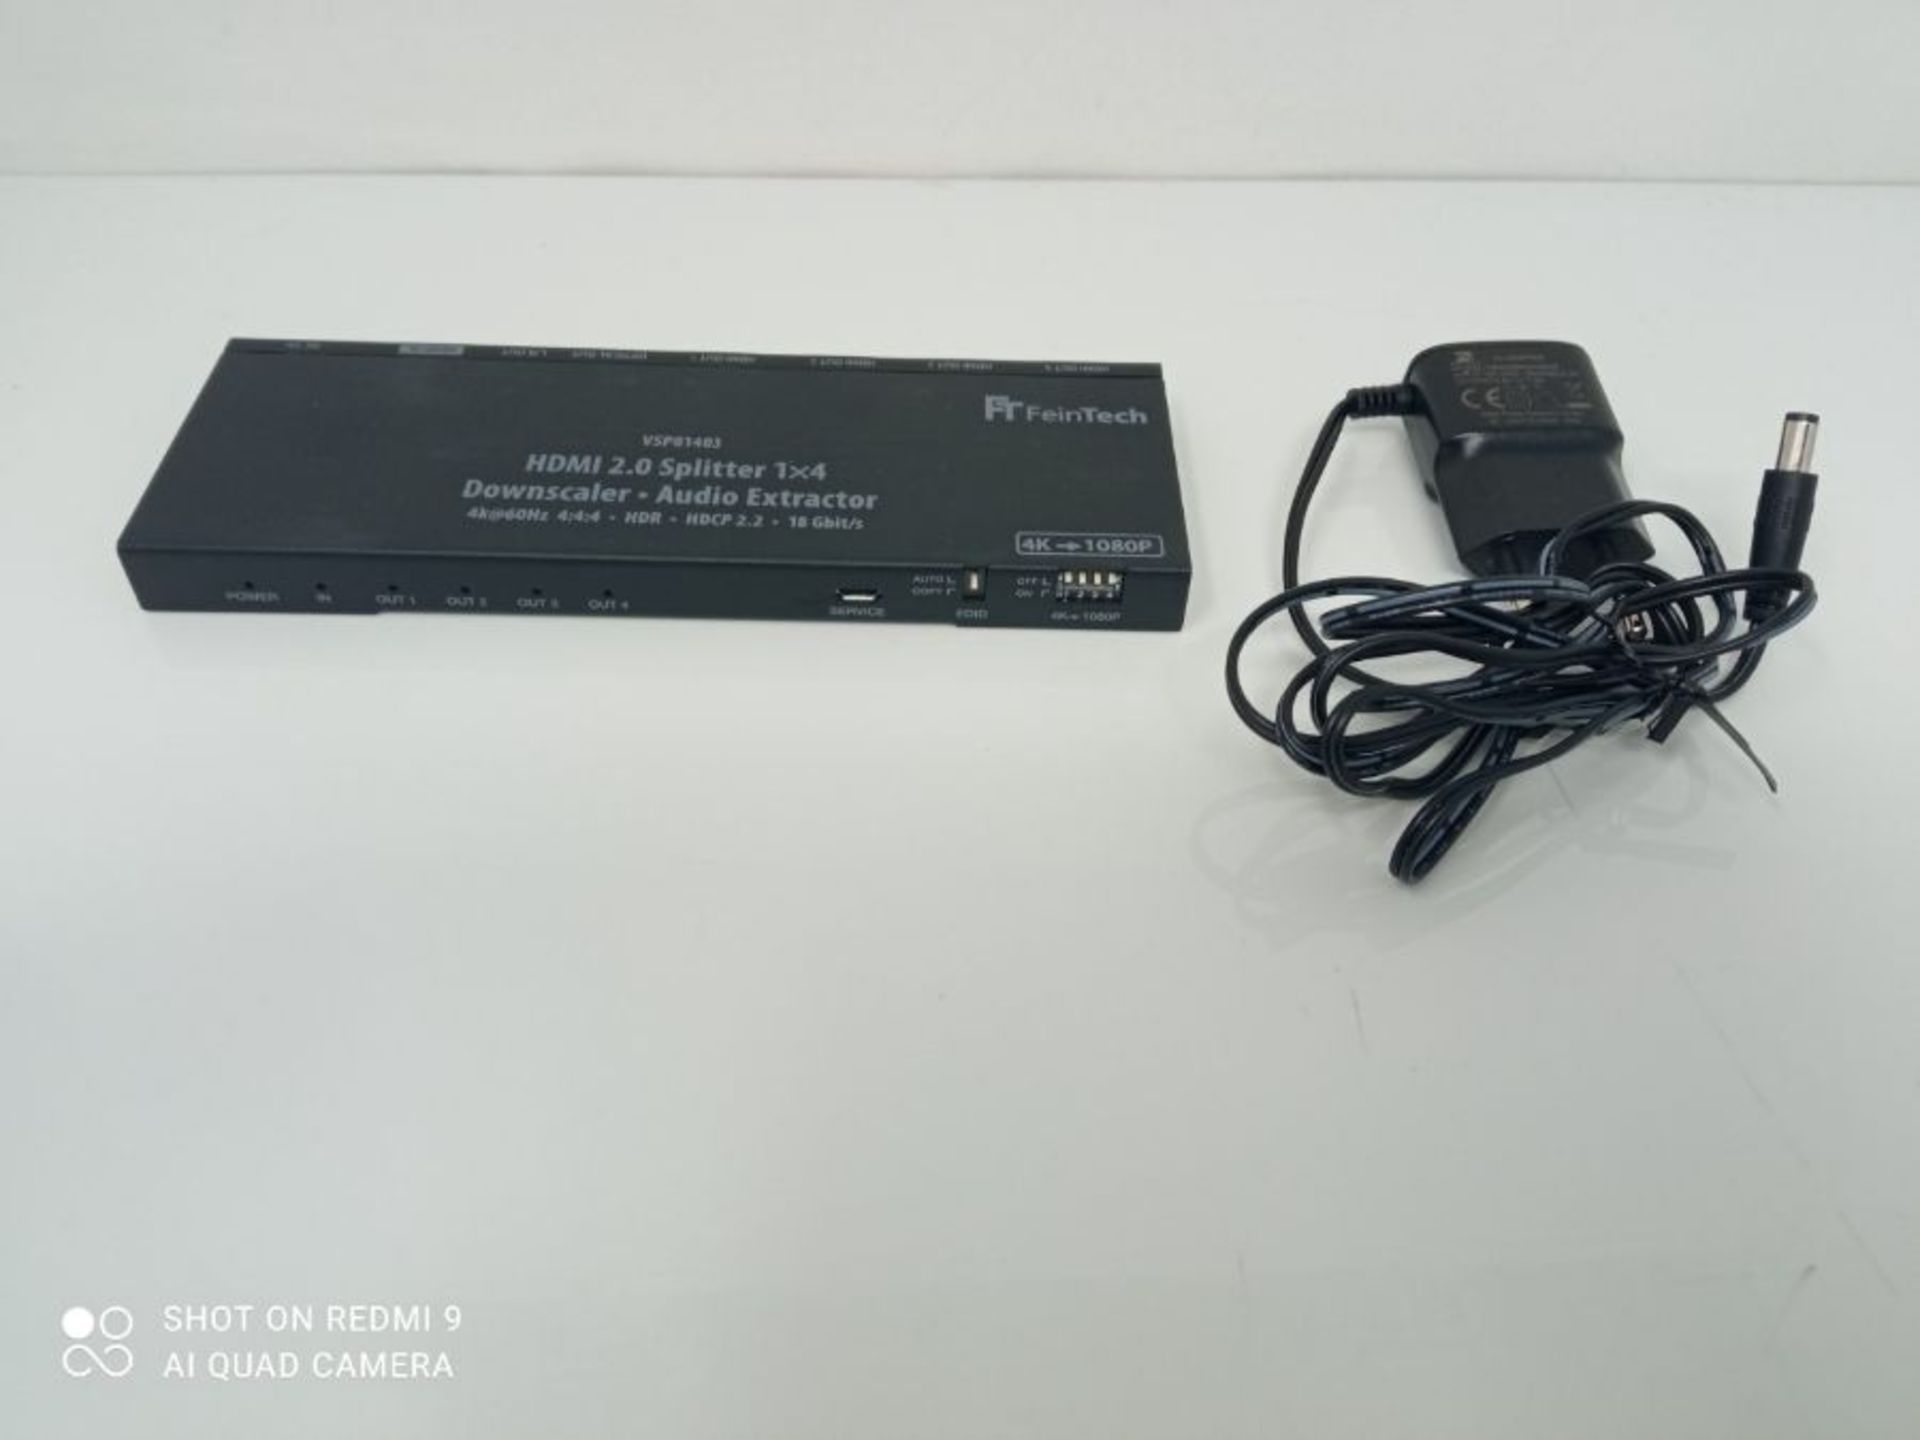 RRP £70.00 FeinTech VSP01403 Répartiteur HDMI 2.0 Splitter 1 x 4 Audio Extractor Toslink Down-Sc - Image 2 of 2